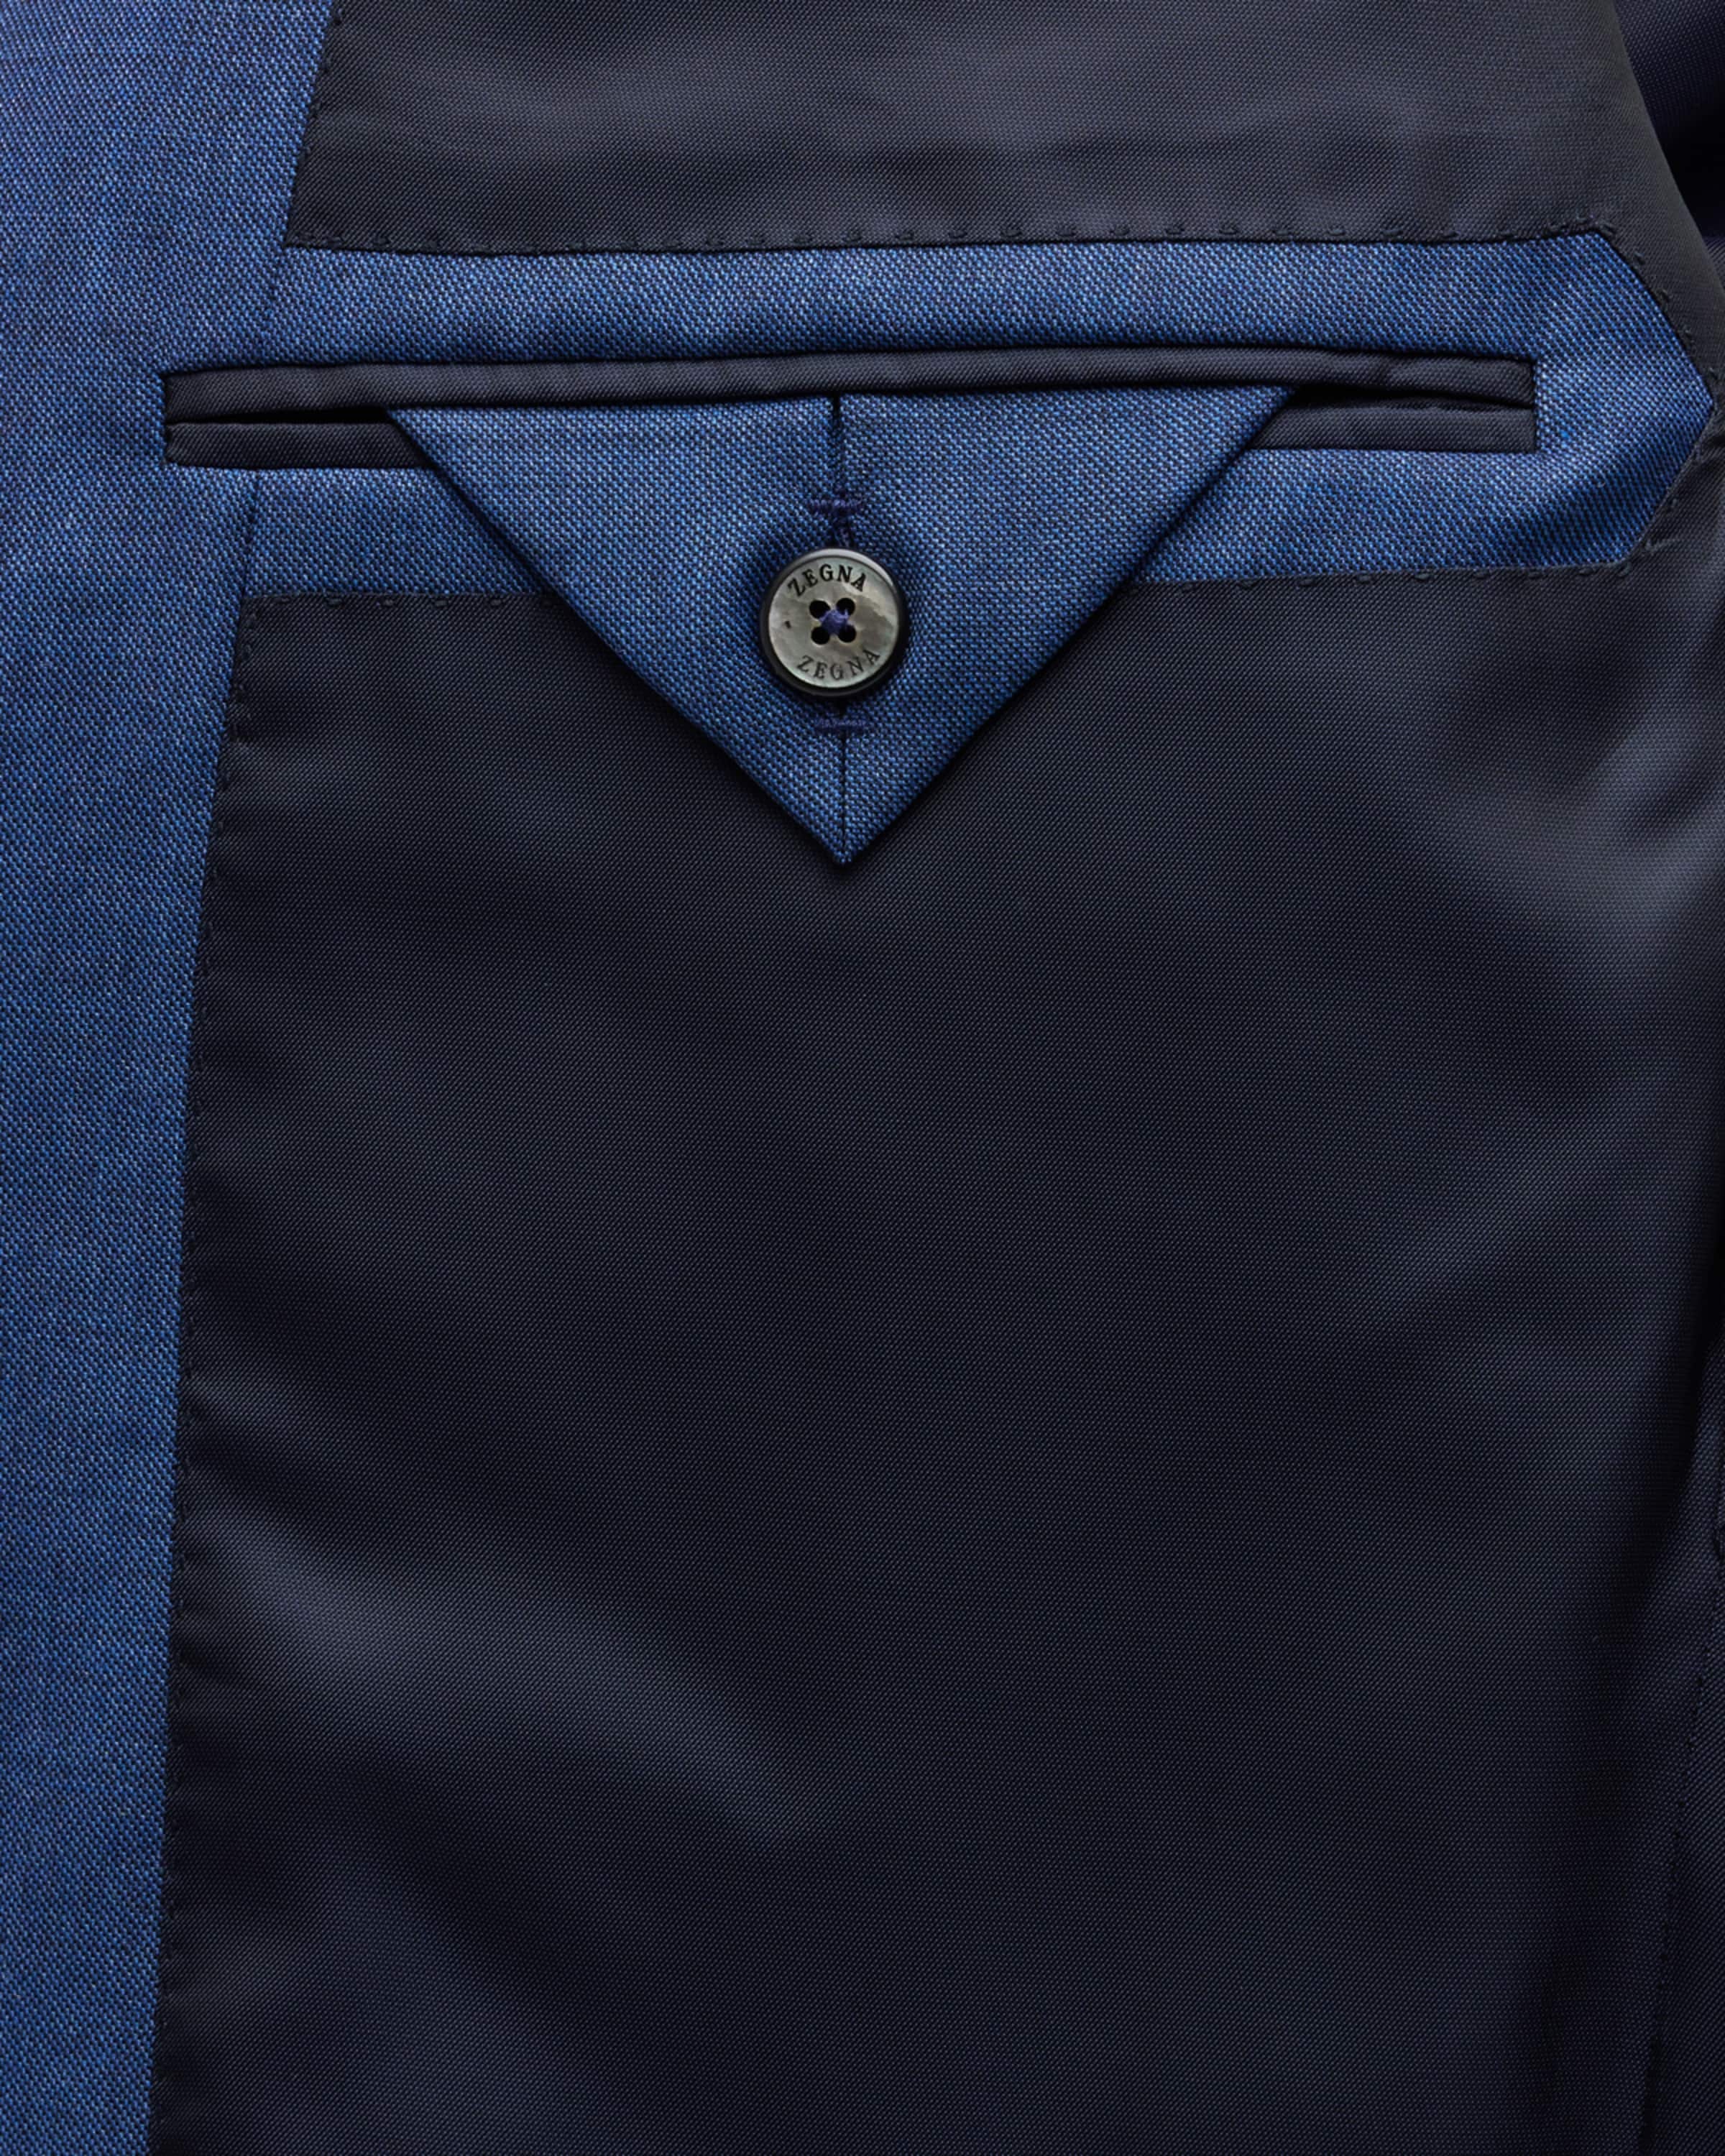 Men's Solid Wool Classic-Fit Suit - 4